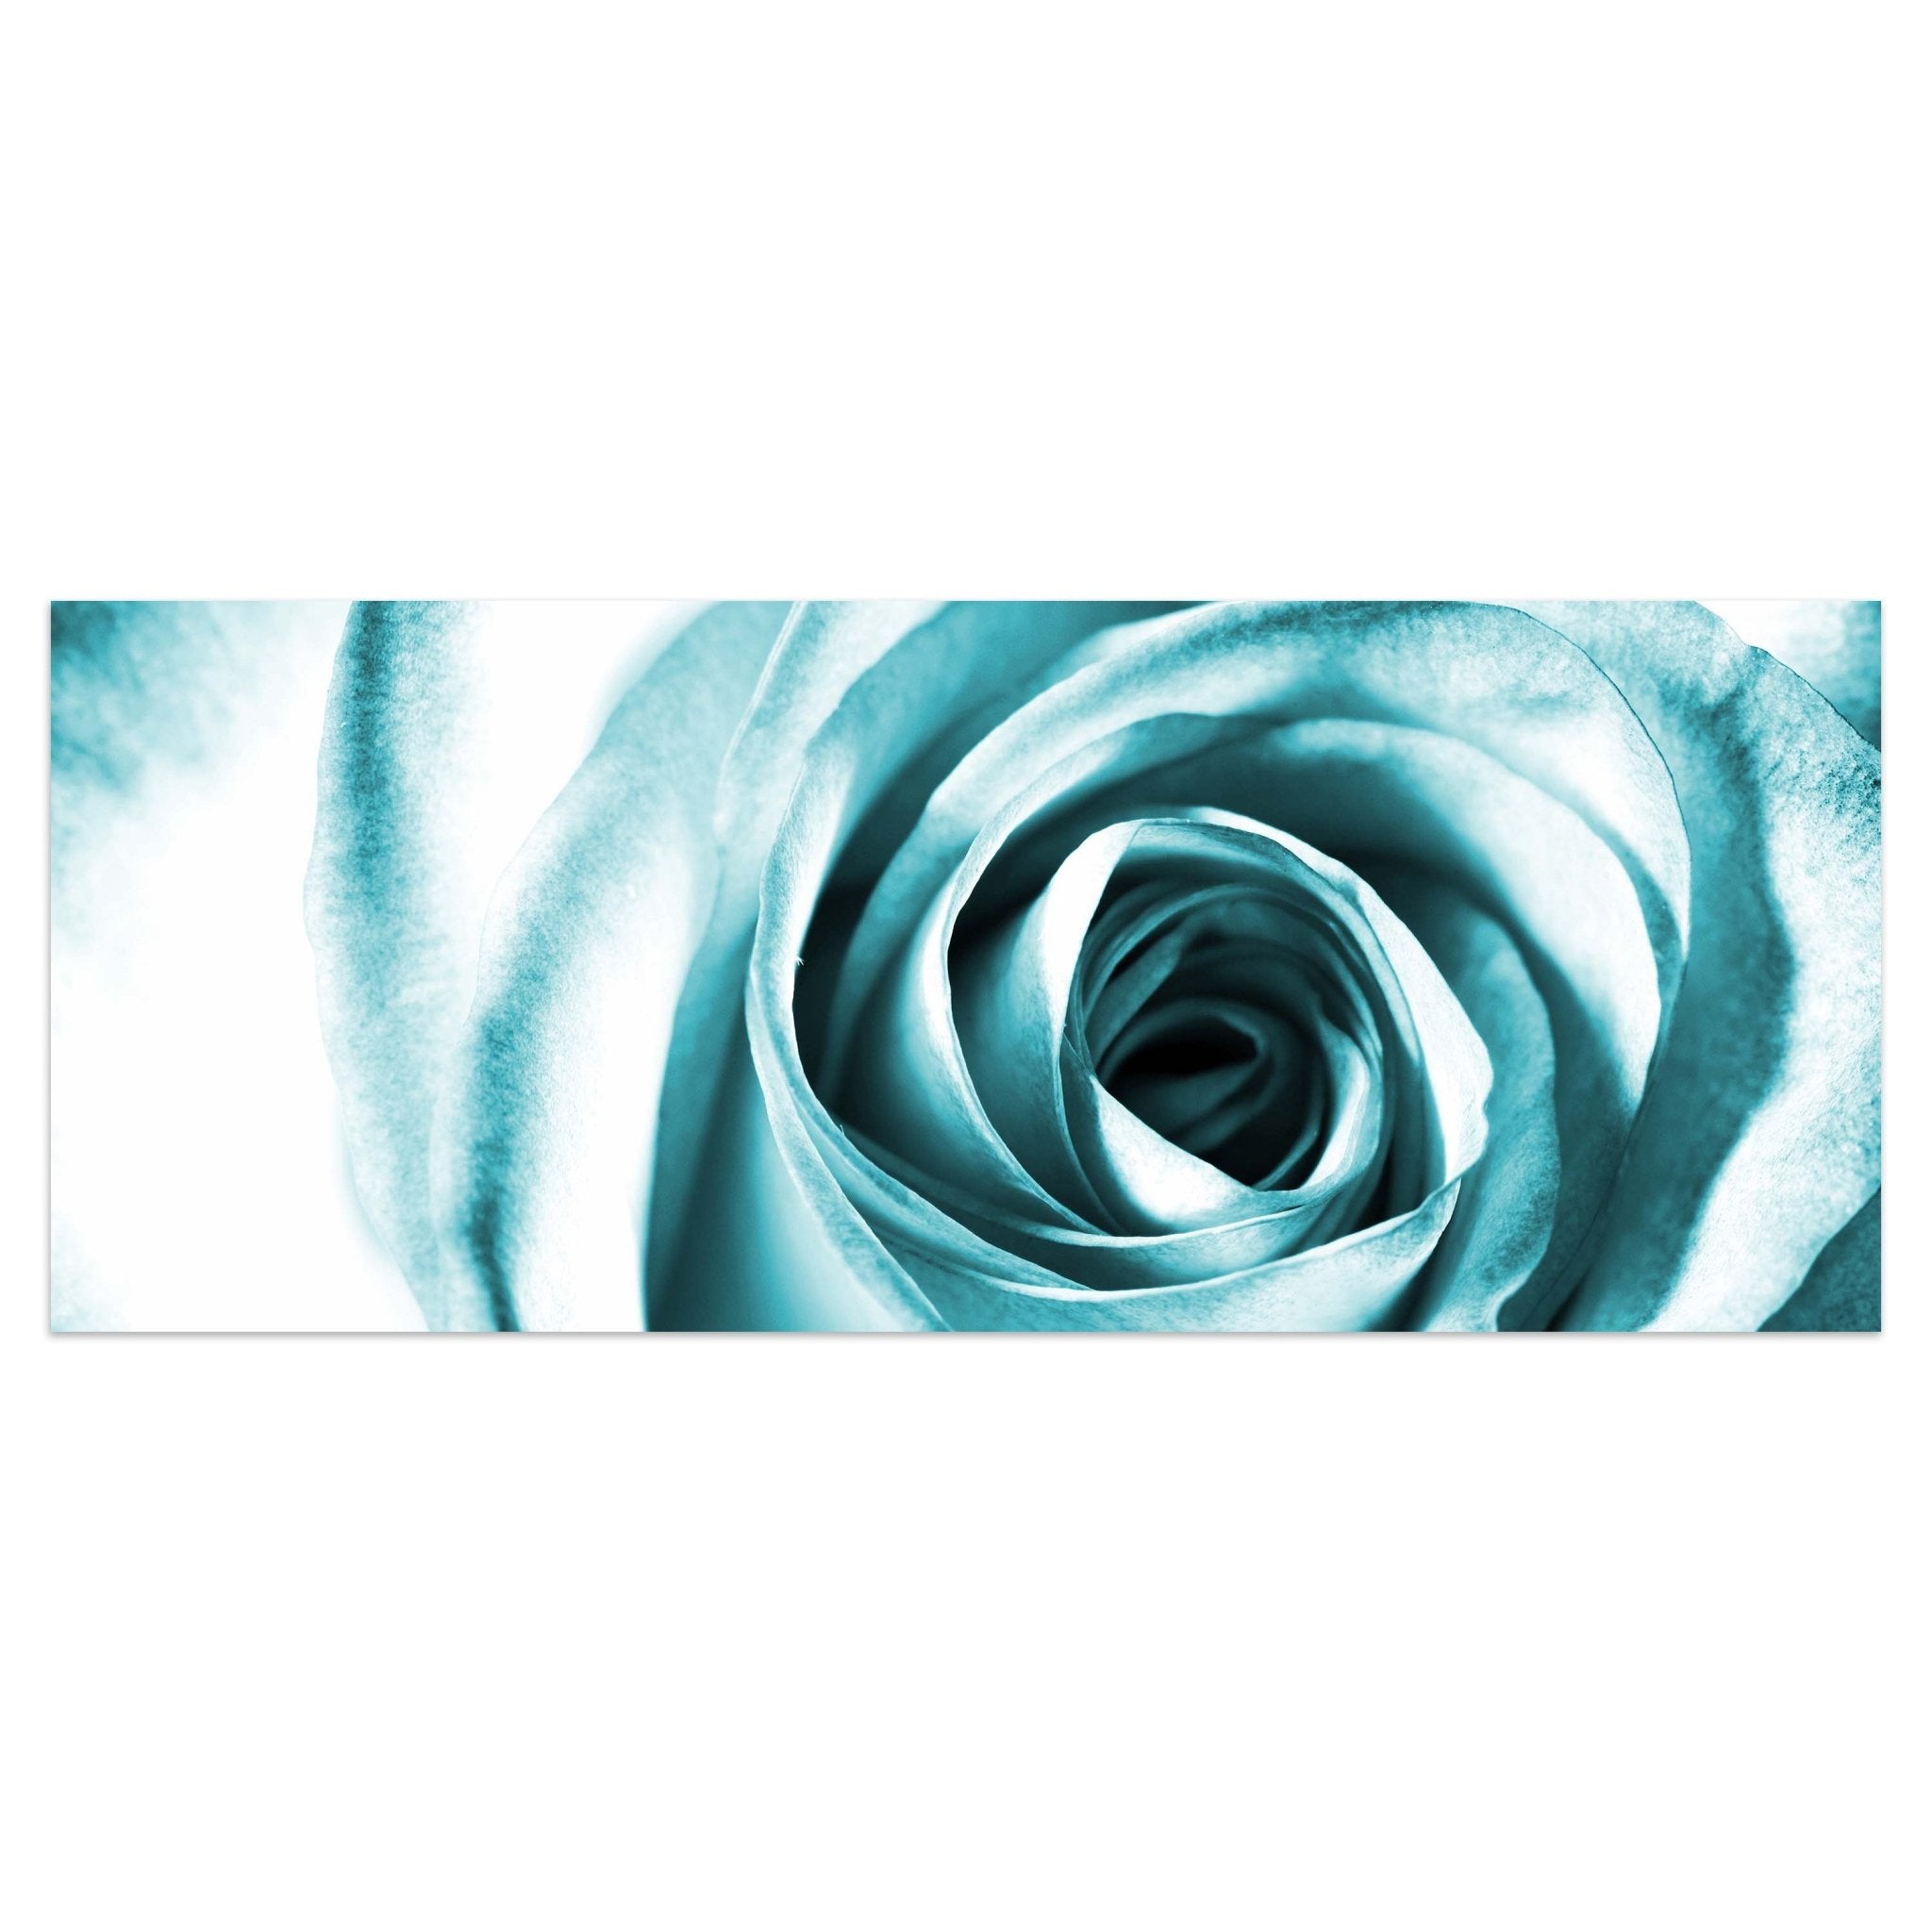 Leinwandbild Blaue Rose Blüte M0227 kaufen - Bild 1